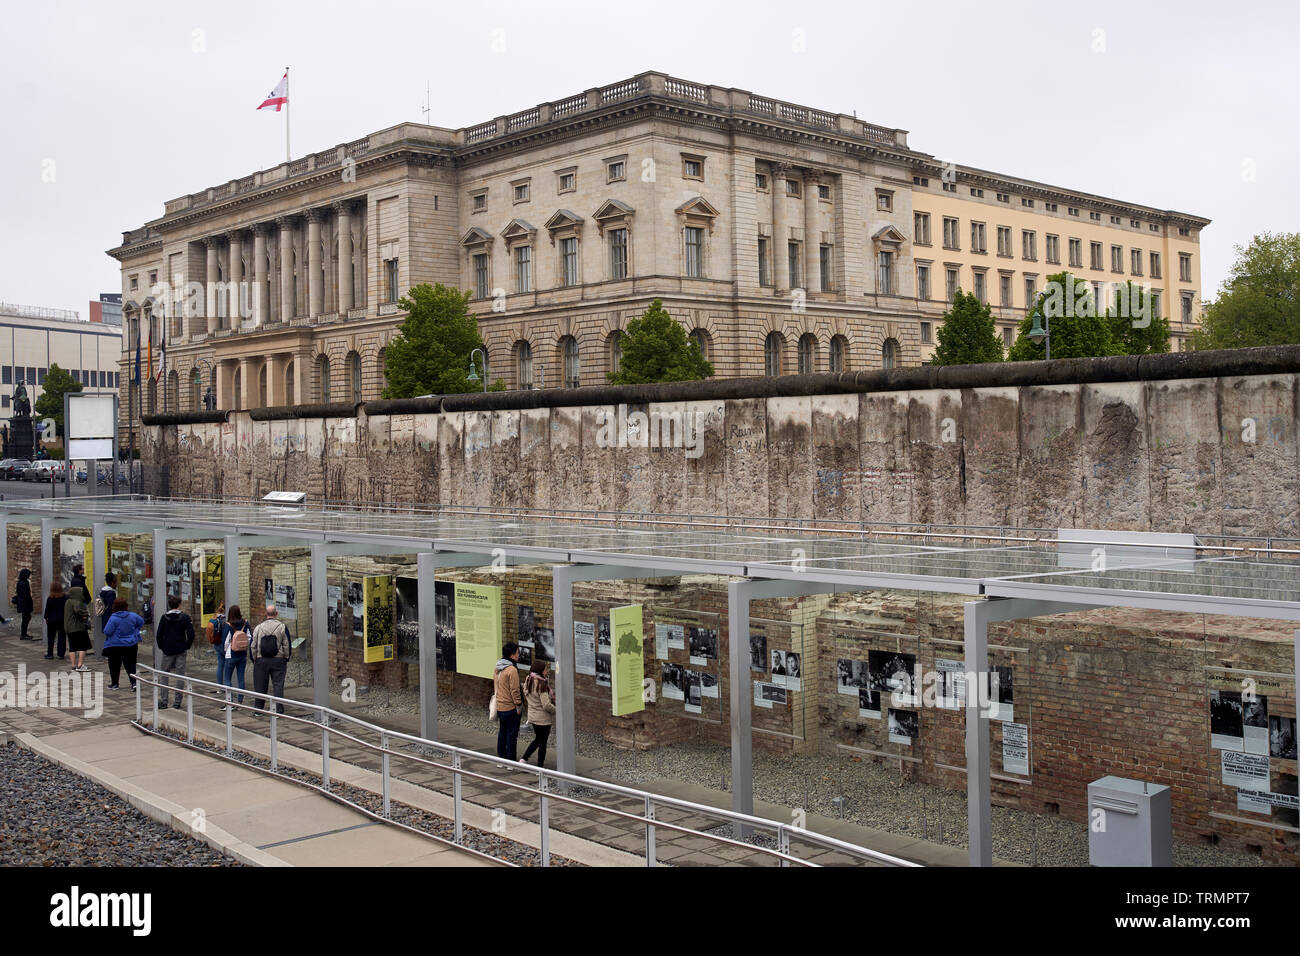 Une partie du mur de Berlin, à côté de l'exposition "Topographie de la terreur", une exposition sur le nazisme dans la seconde guerre mondiale. Banque D'Images